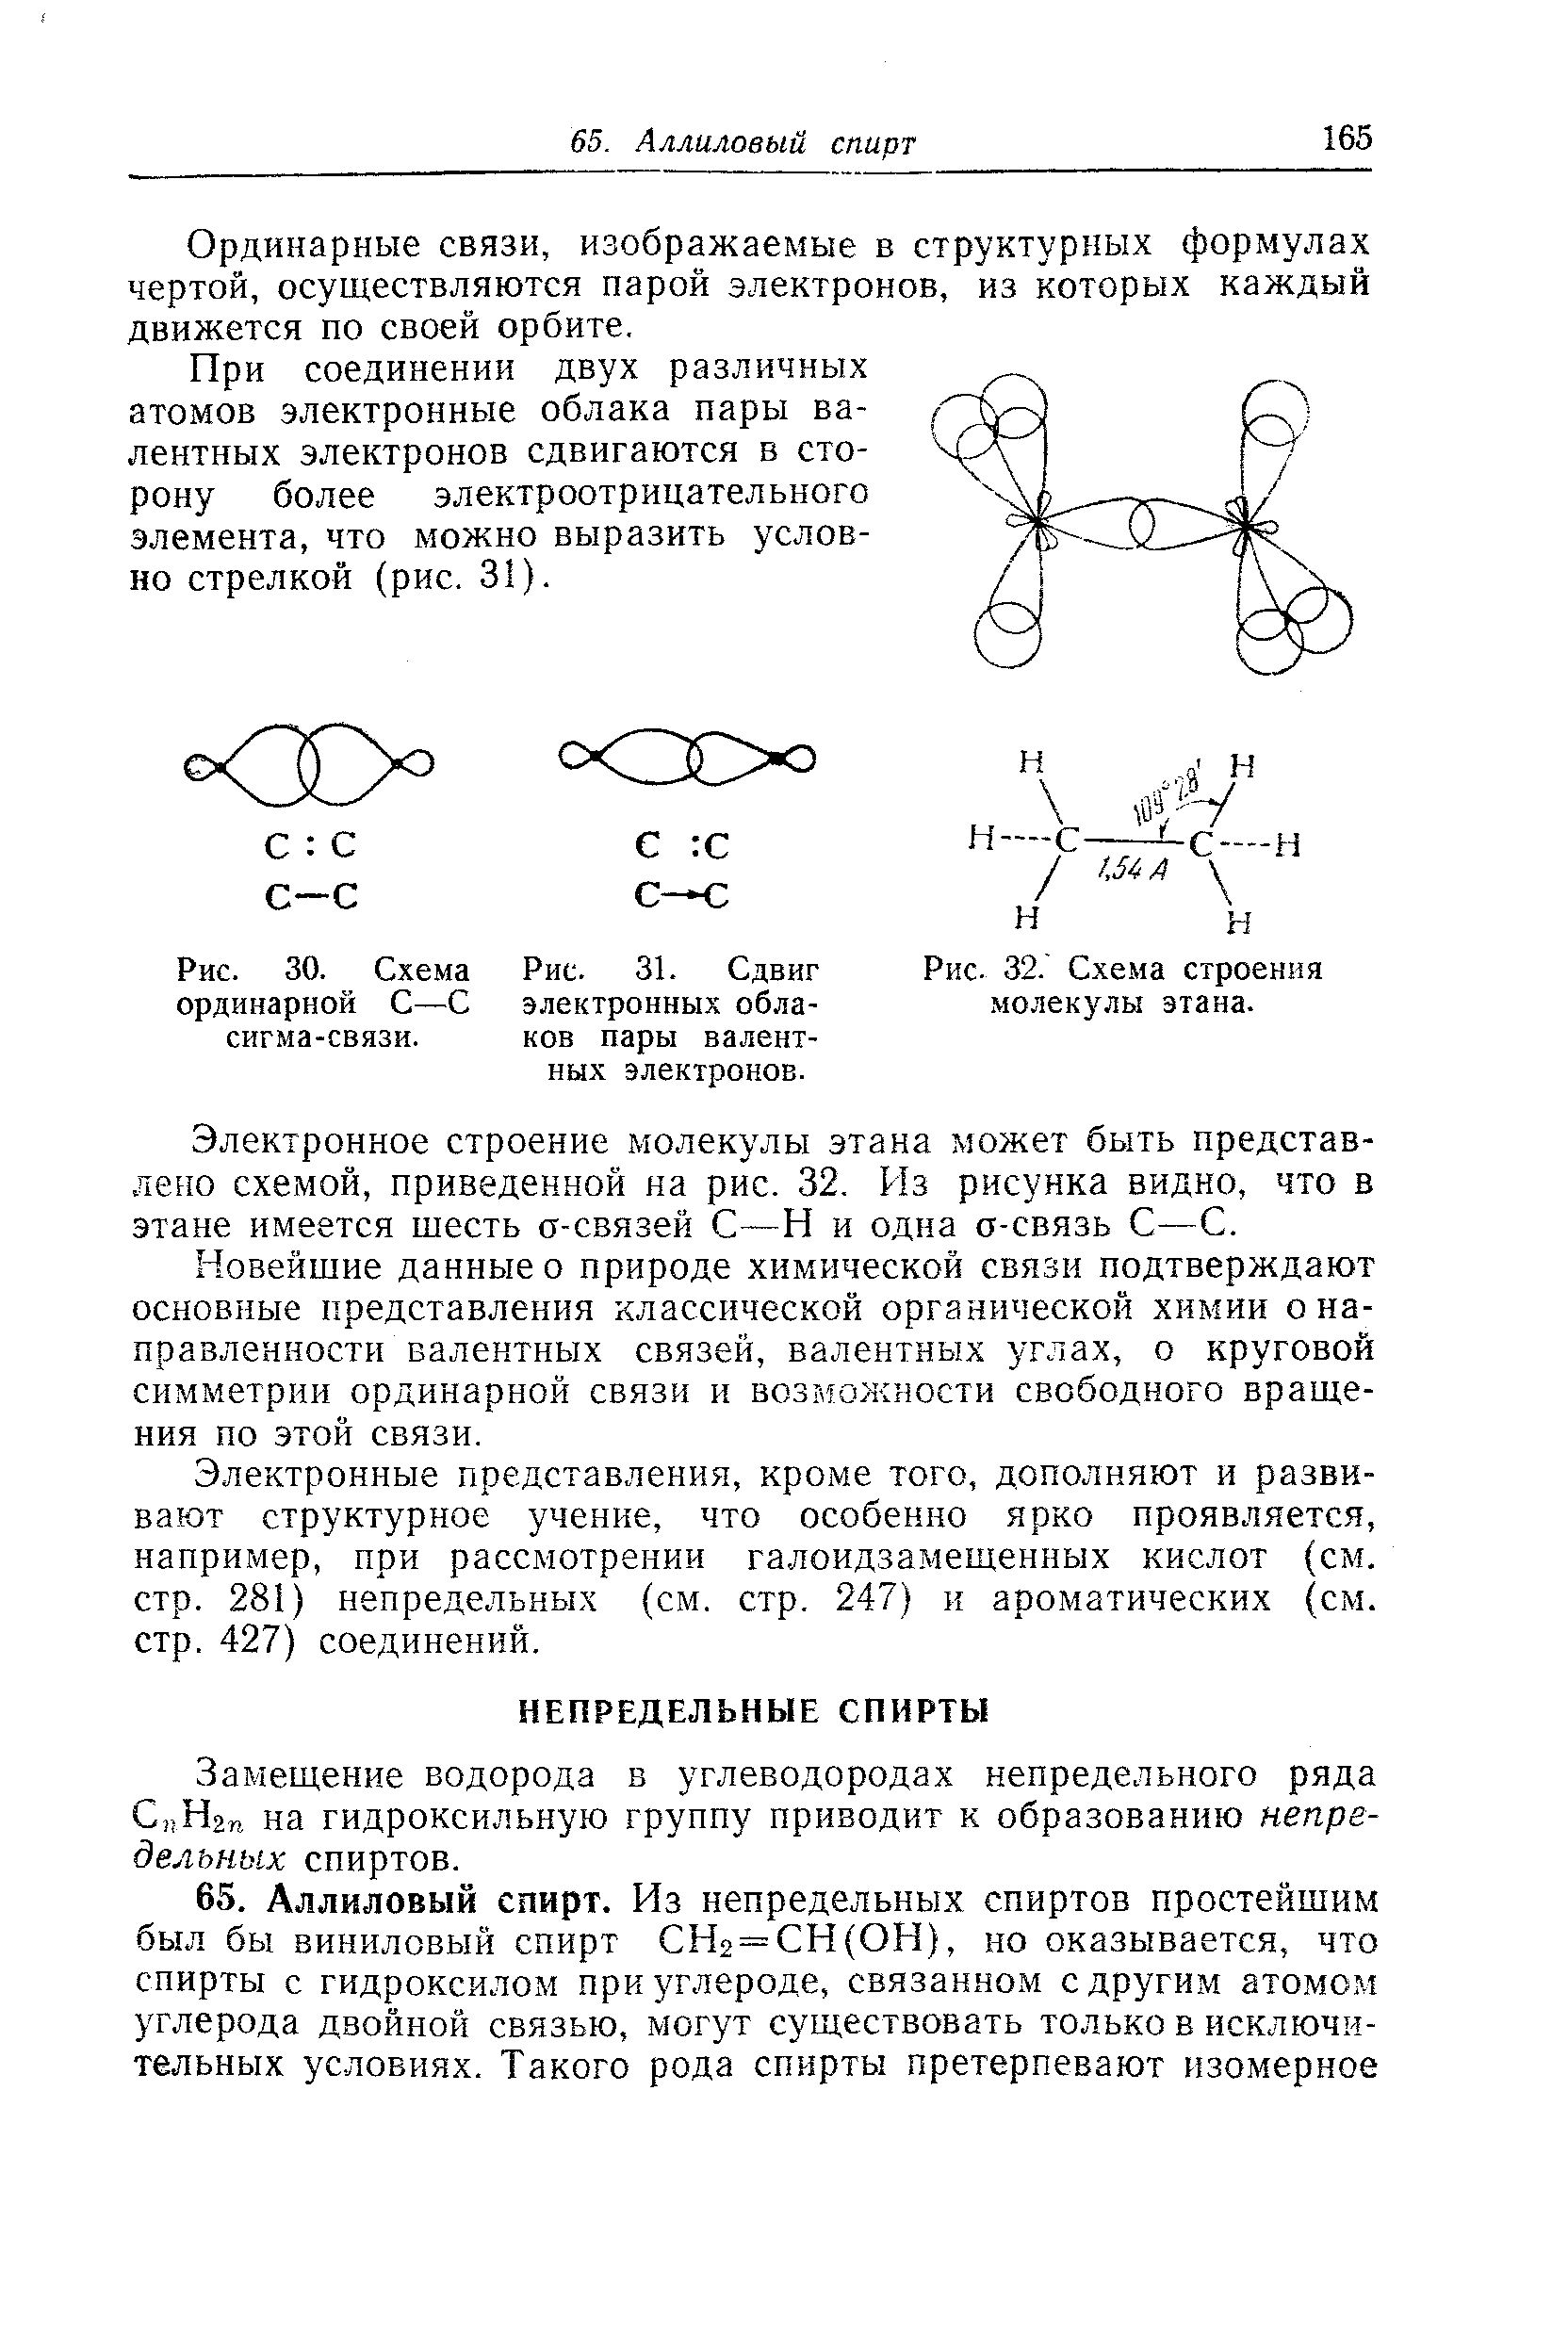 Замещение водорода в углеводородах непредельного ряда СцНгп на гидроксильную группу приводит к образованию непредельных спиртов.